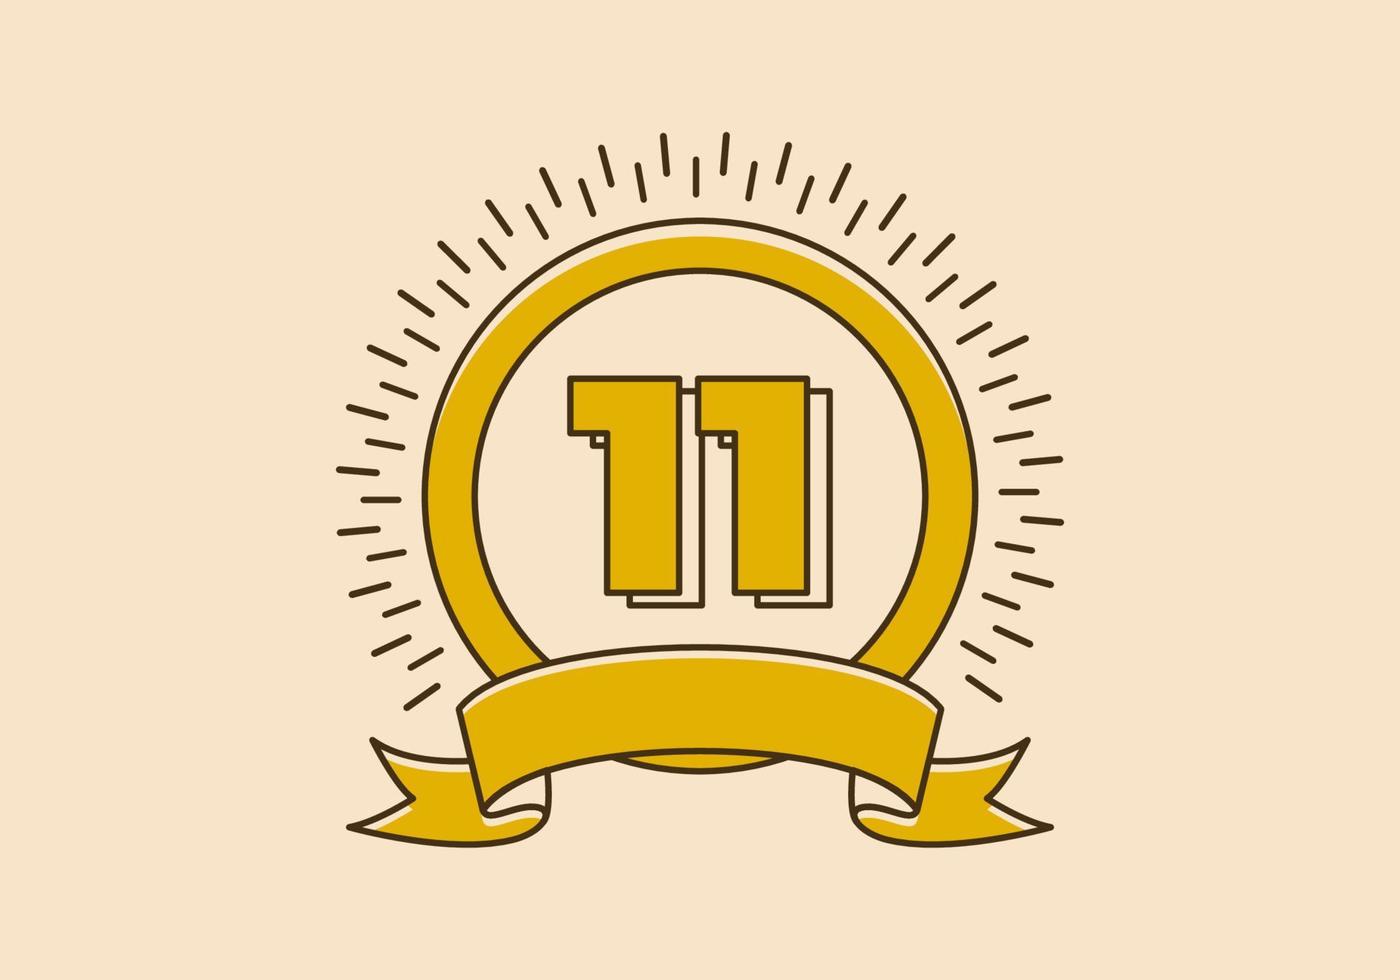 insignia de círculo amarillo vintage con el número 11 en él vector